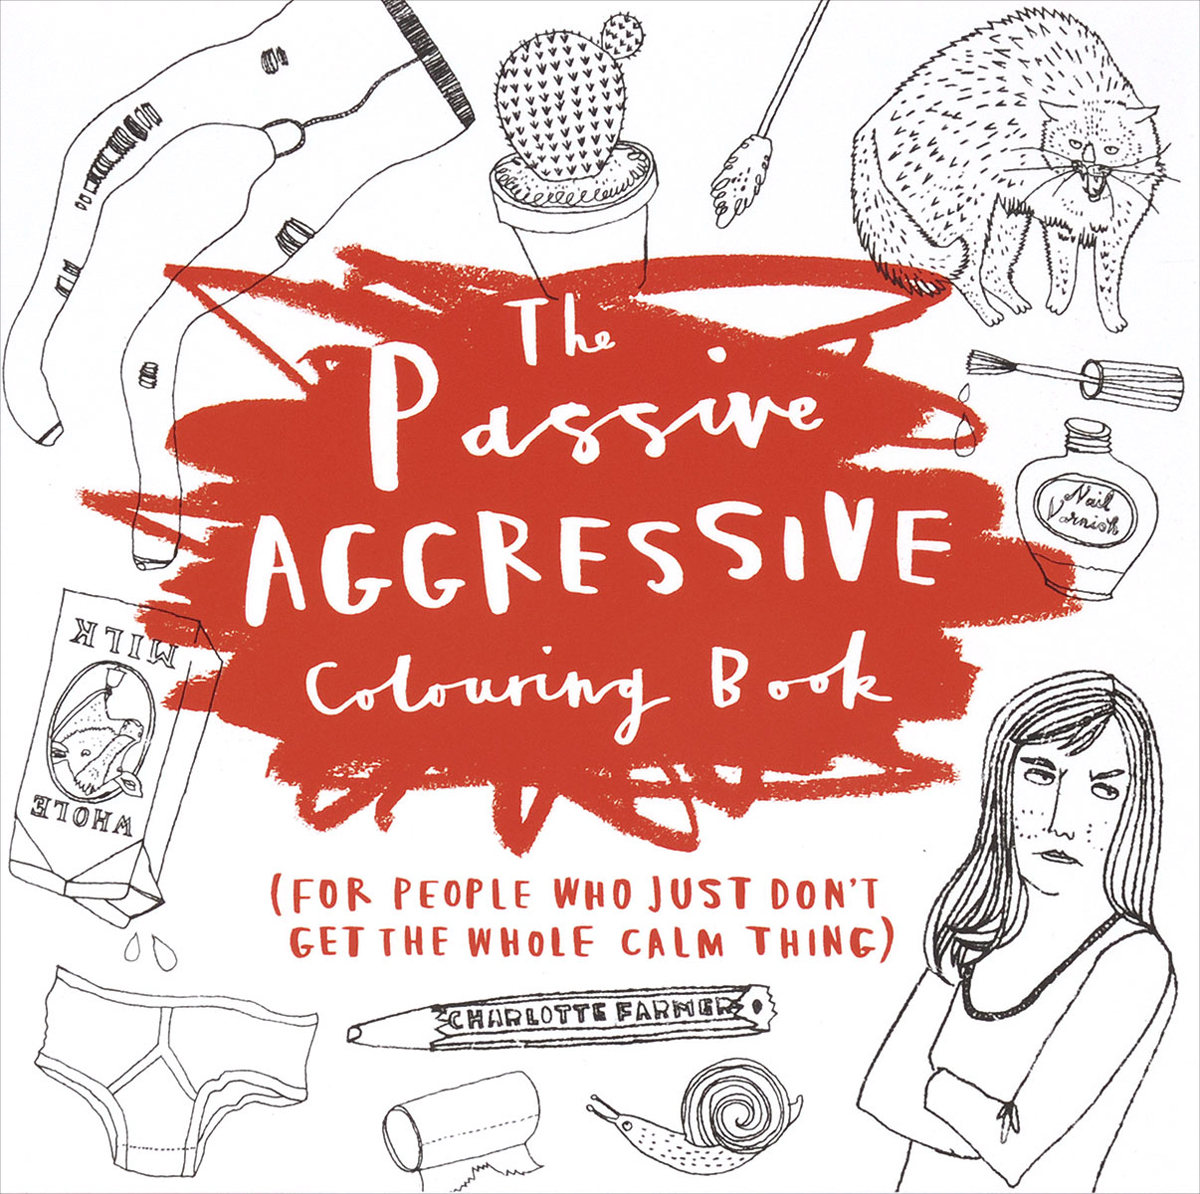 The Passive-Aggressive Colouring Book